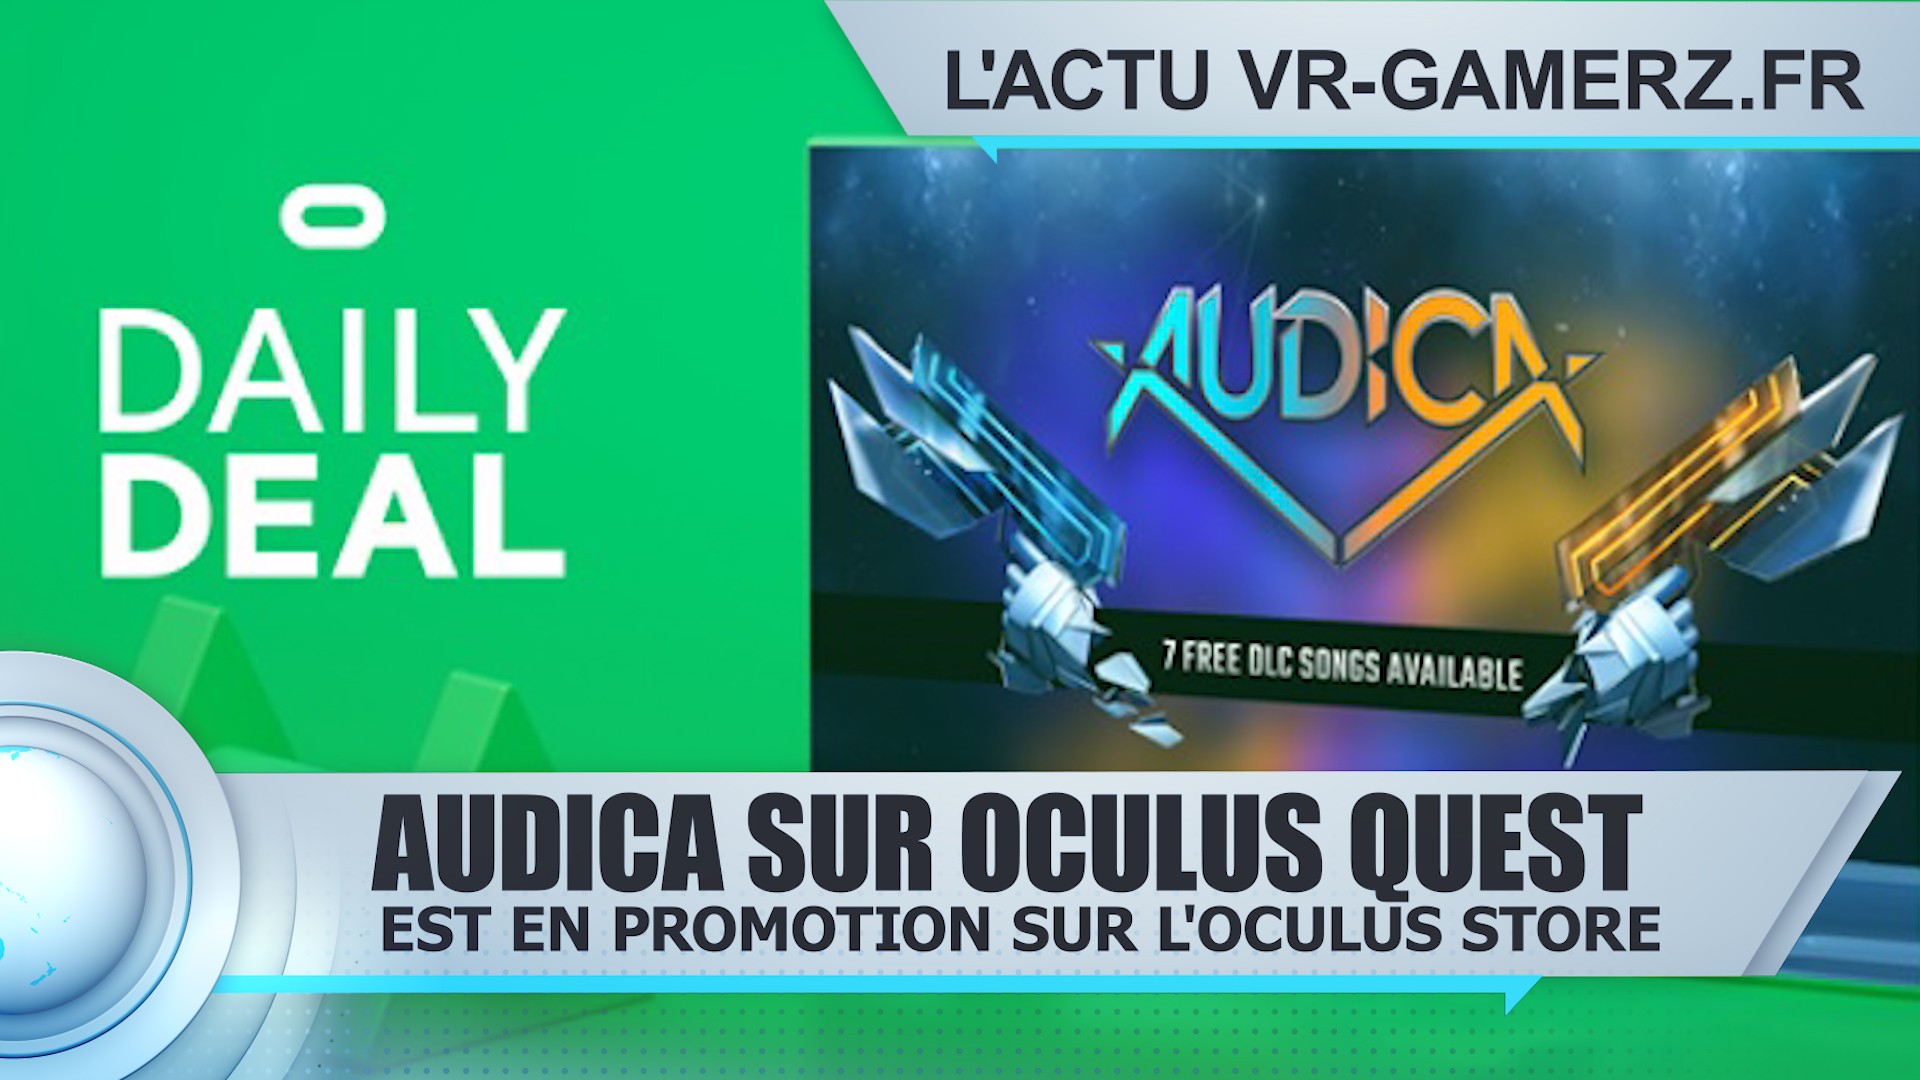 Audica est en promotion sur Oculus quest